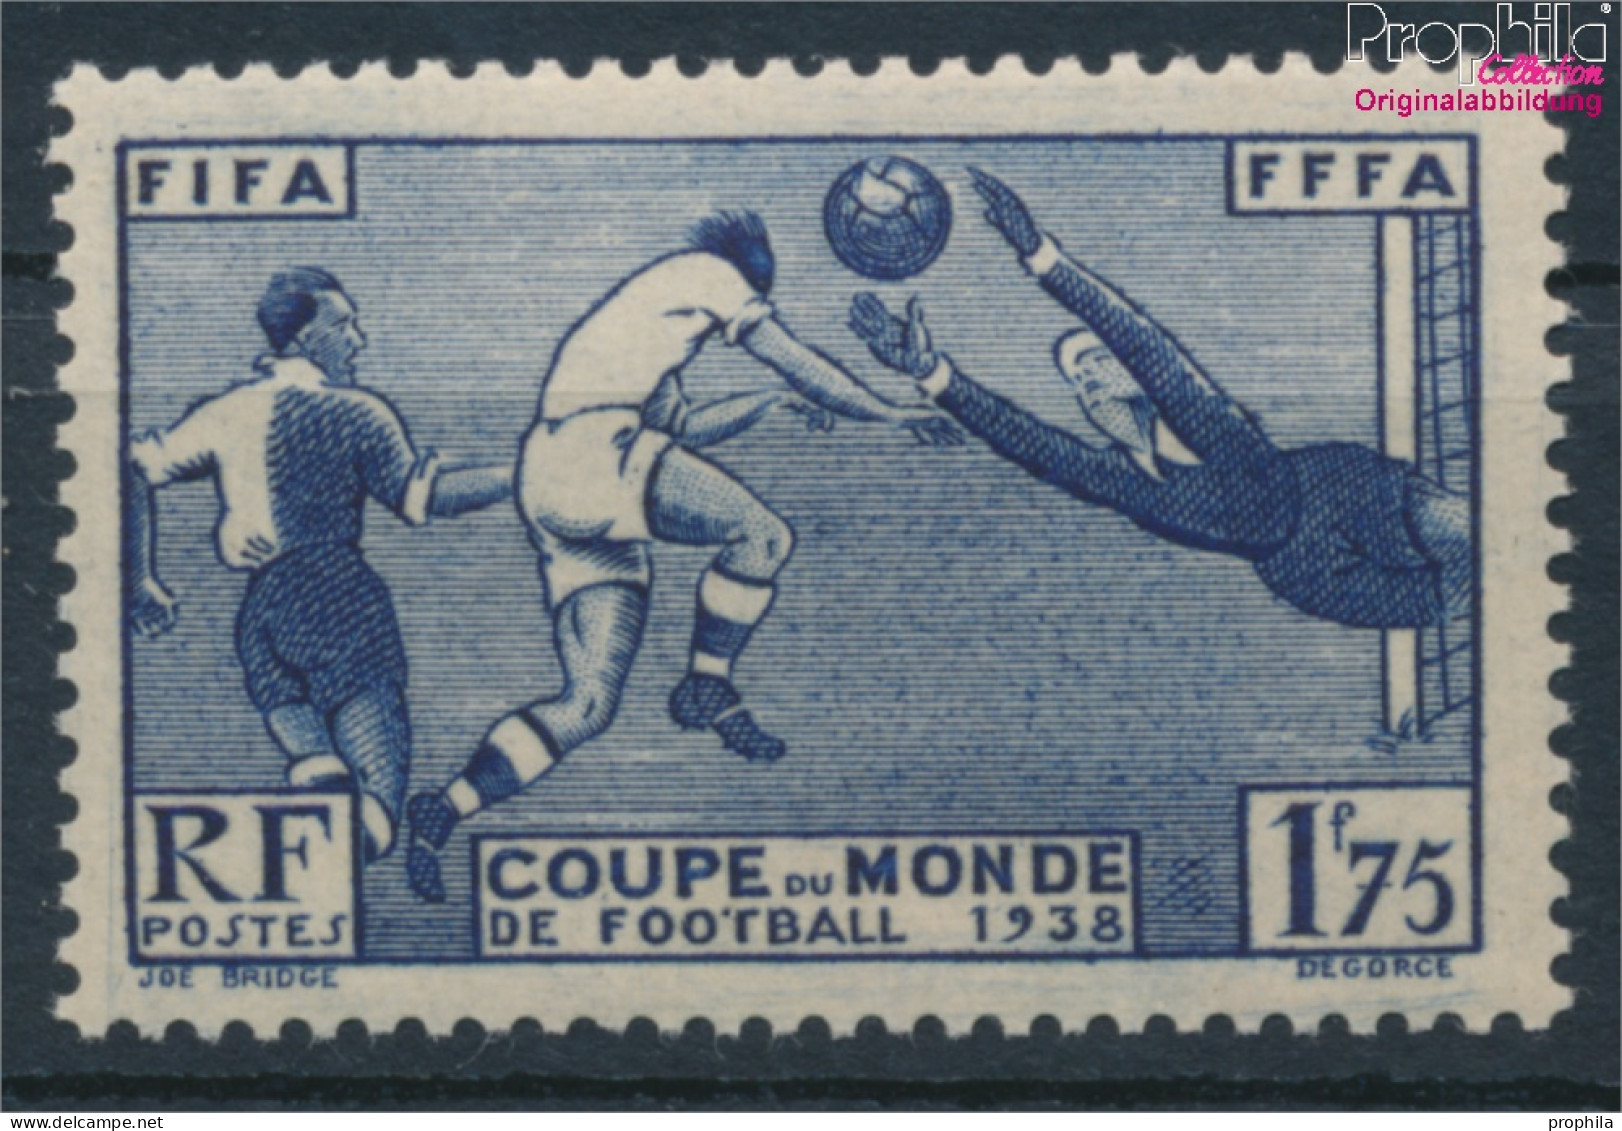 Frankreich 427 (kompl.Ausg.) Postfrisch 1938 Fußball-WM (10391182 - Ungebraucht